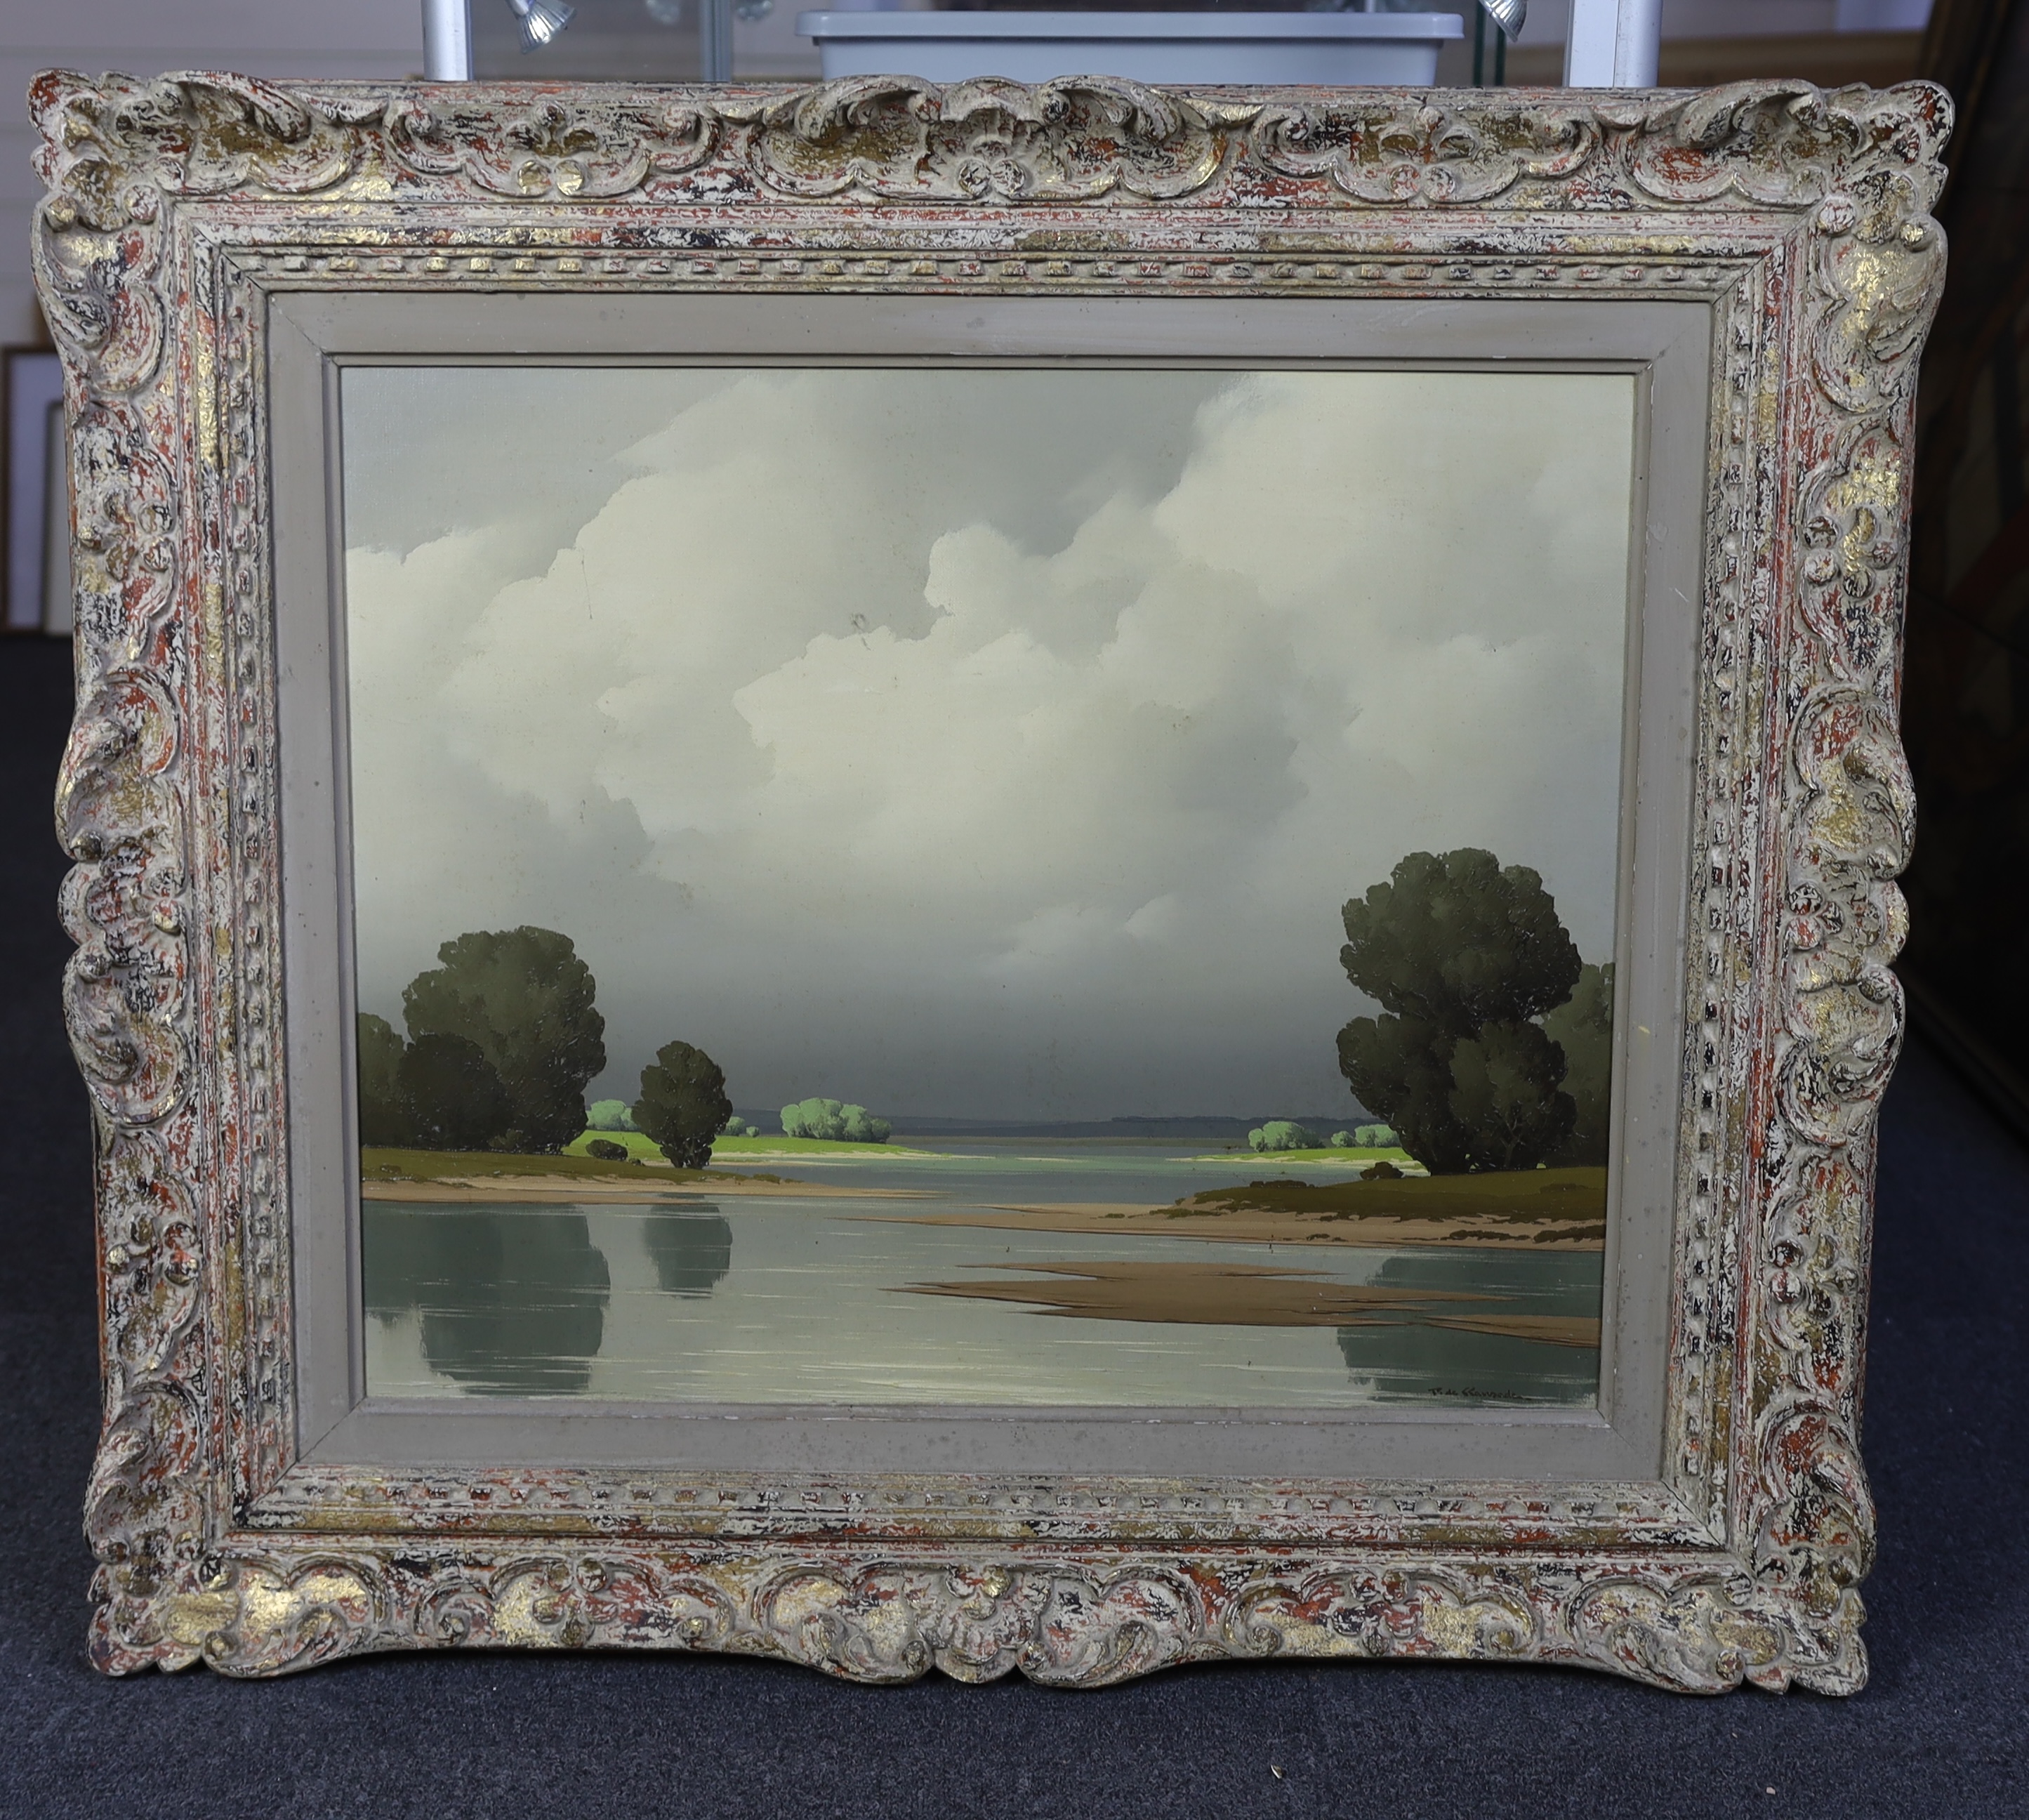 Pierre de Clausades (French, 1910-1976), 'Paysage de la Loire', oil on canvas, 52 x 64cm